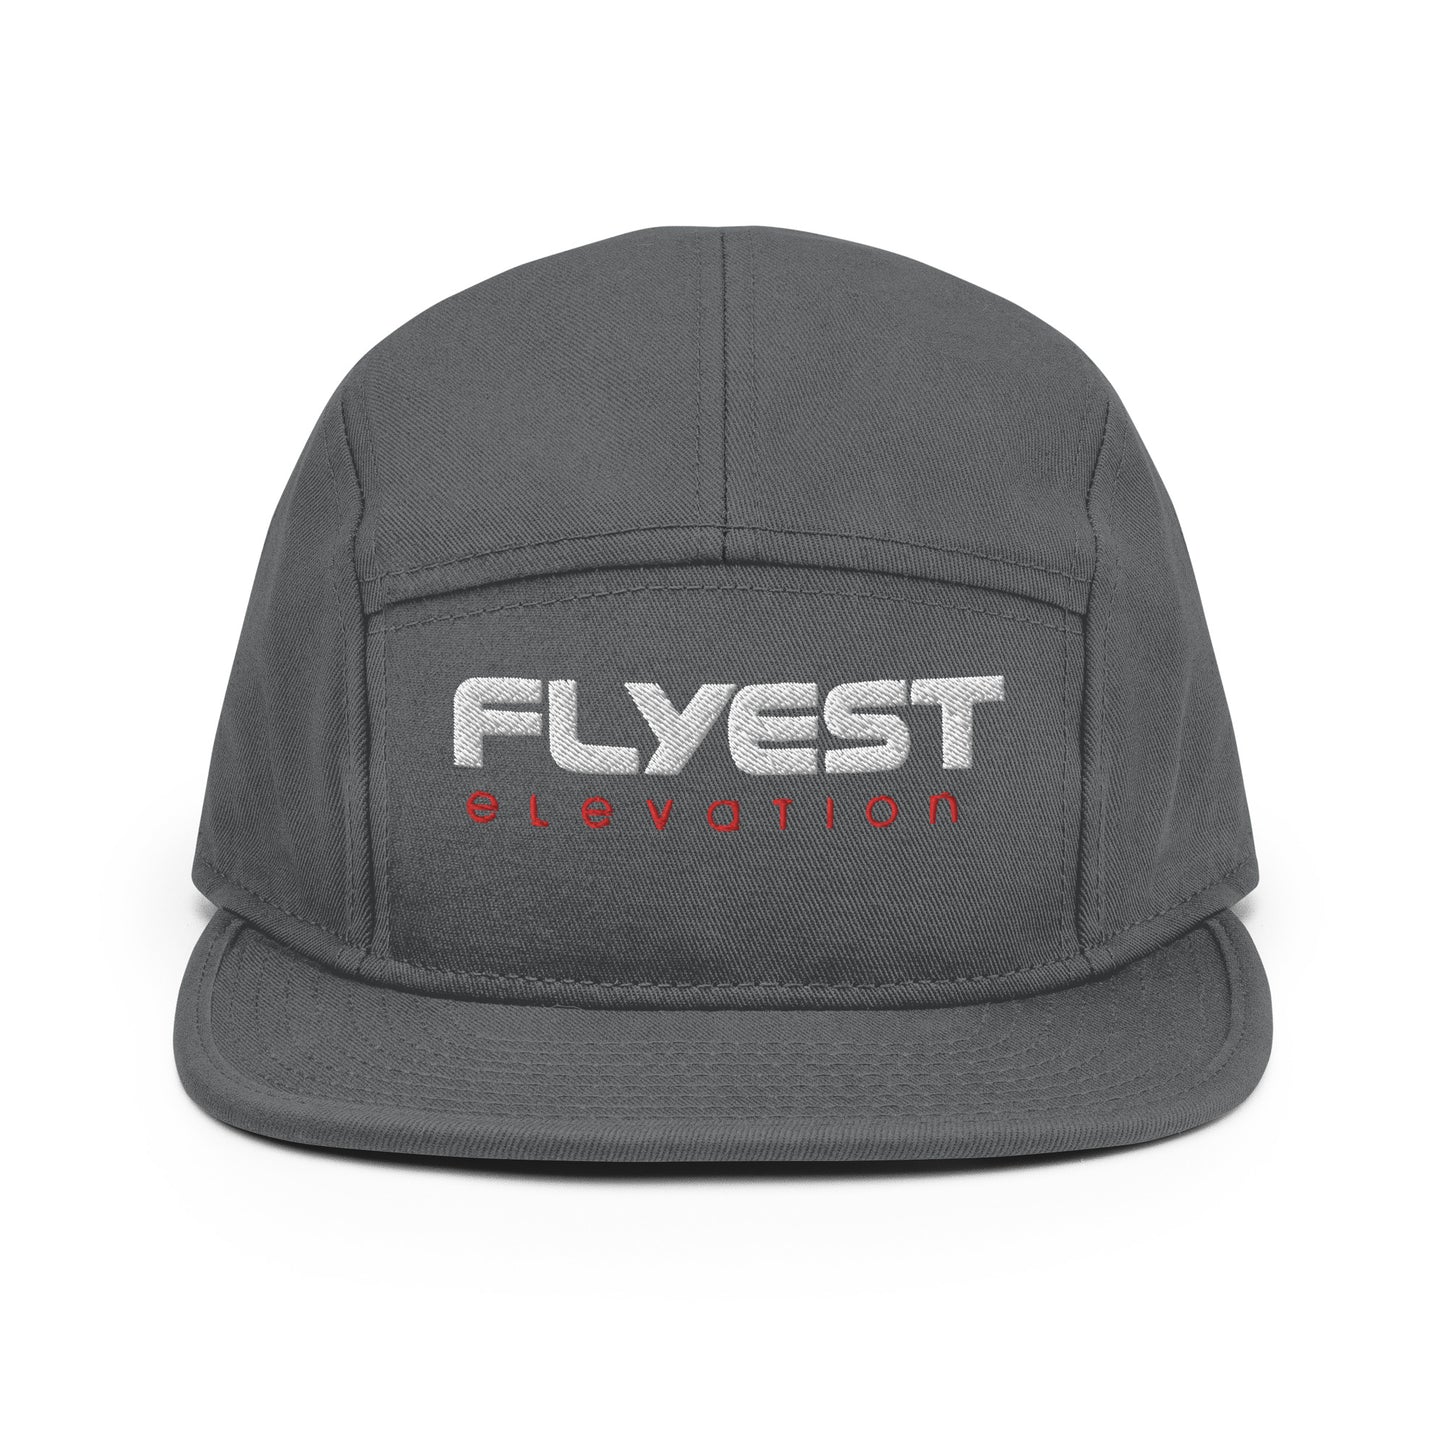 Flyest Elevation Camper Cap